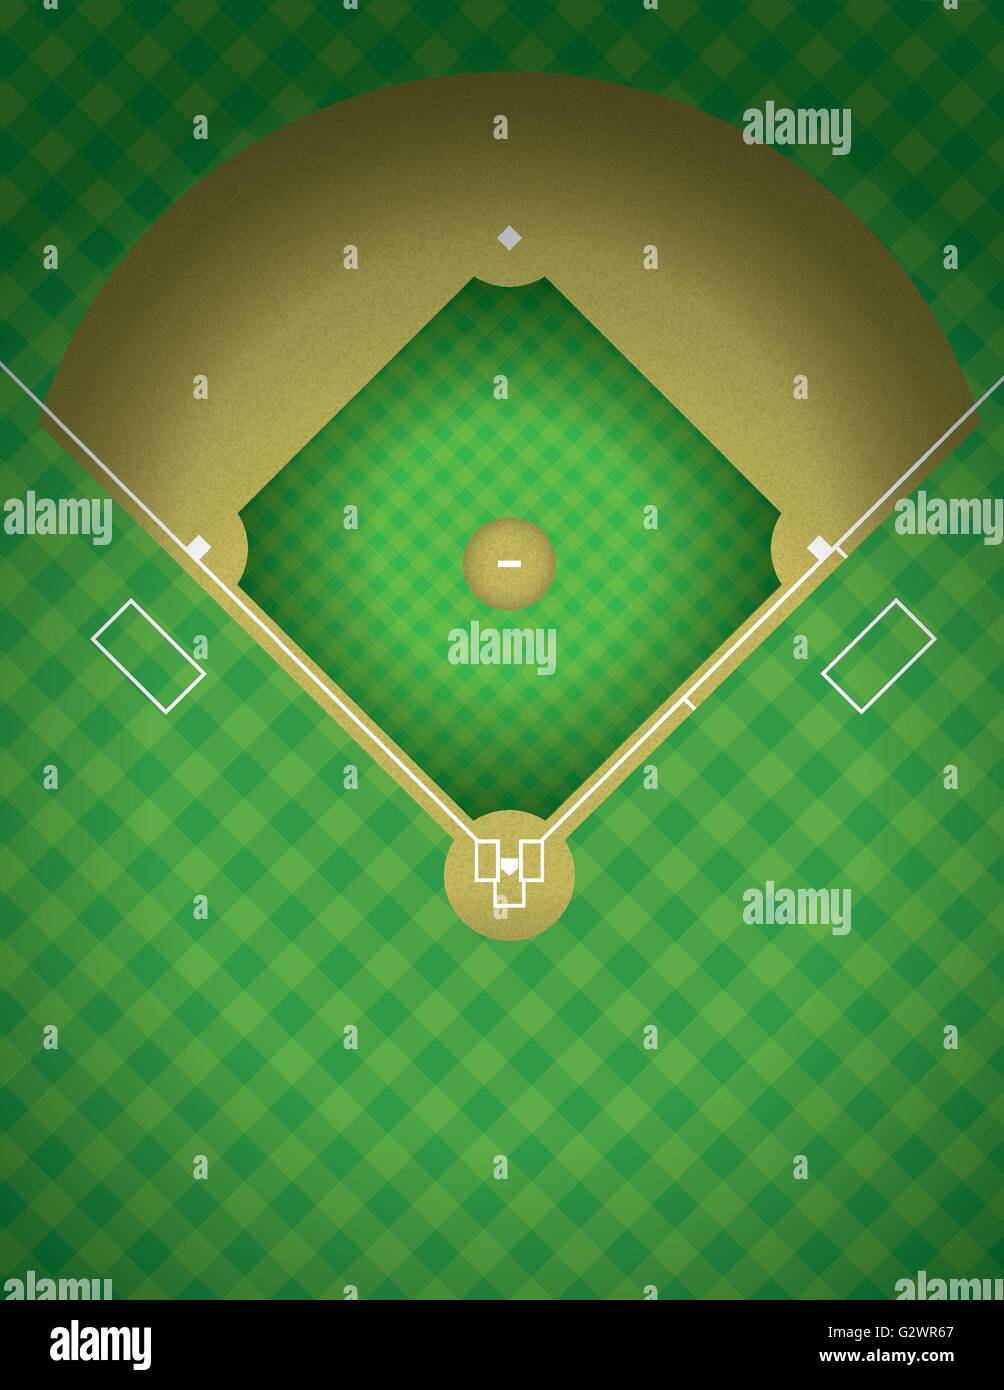 Eine arial Ansicht einer Baseball-Feld-Illustration. Vektor EPS 10 zur Verfügung. EPS enthält Folien. Stock Vektor